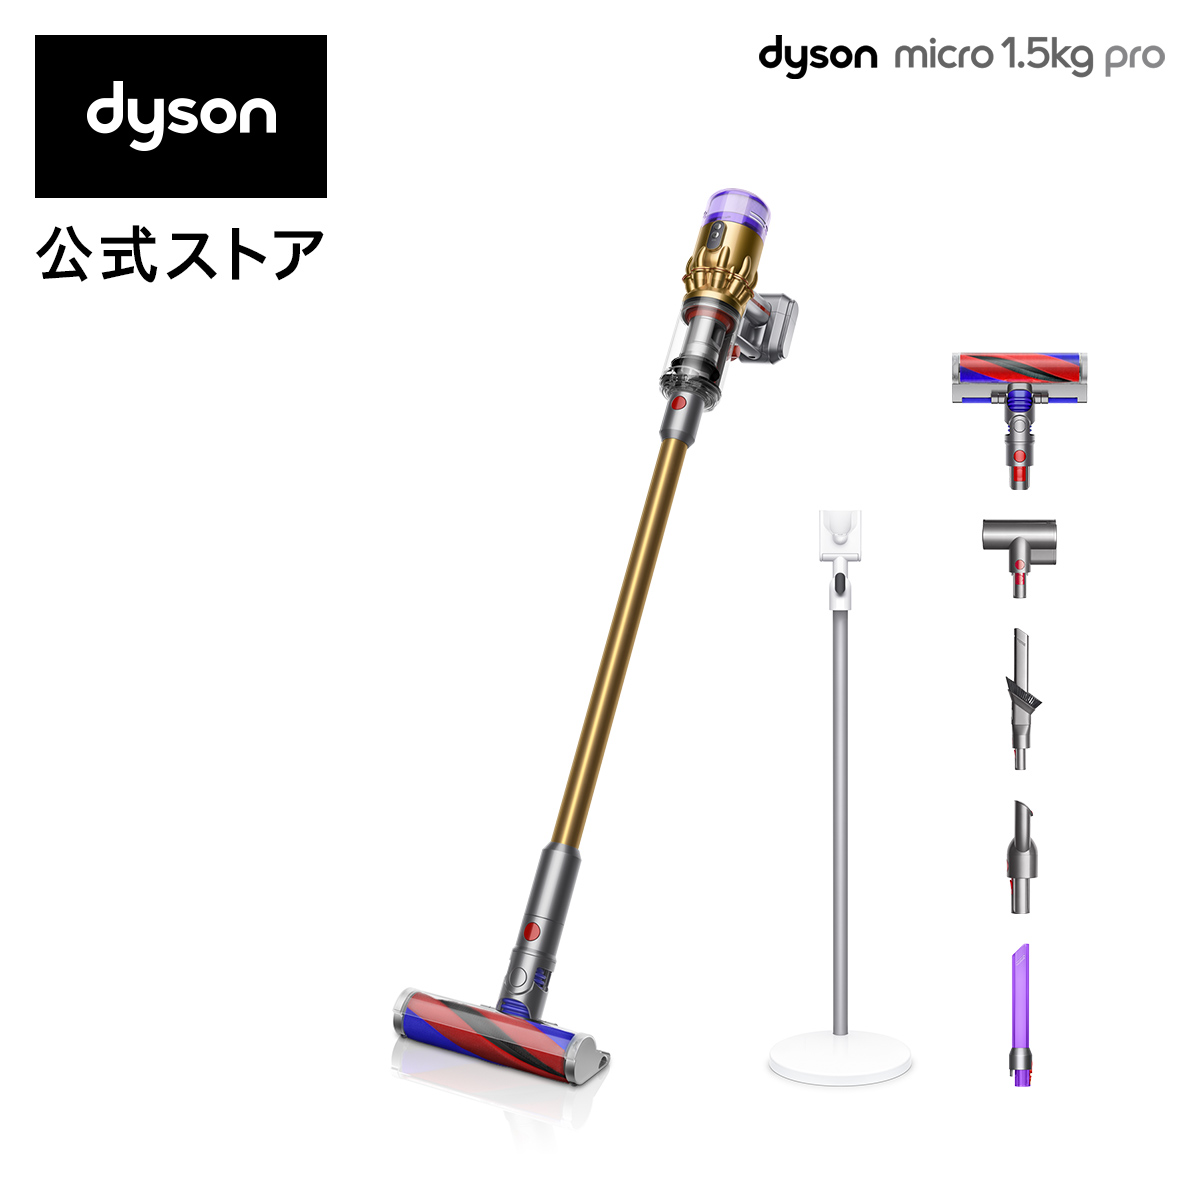 Dyson ダイソン マイクロ プロ 掃除機 激安特価品 dyson コードレスクリーナー sv21ffpro 最軽量モデル 70％OFFアウトレット 1.5kg サイクロン式 Micro 2020年最新モデル コードレス掃除機 SV21FFPRO Pro